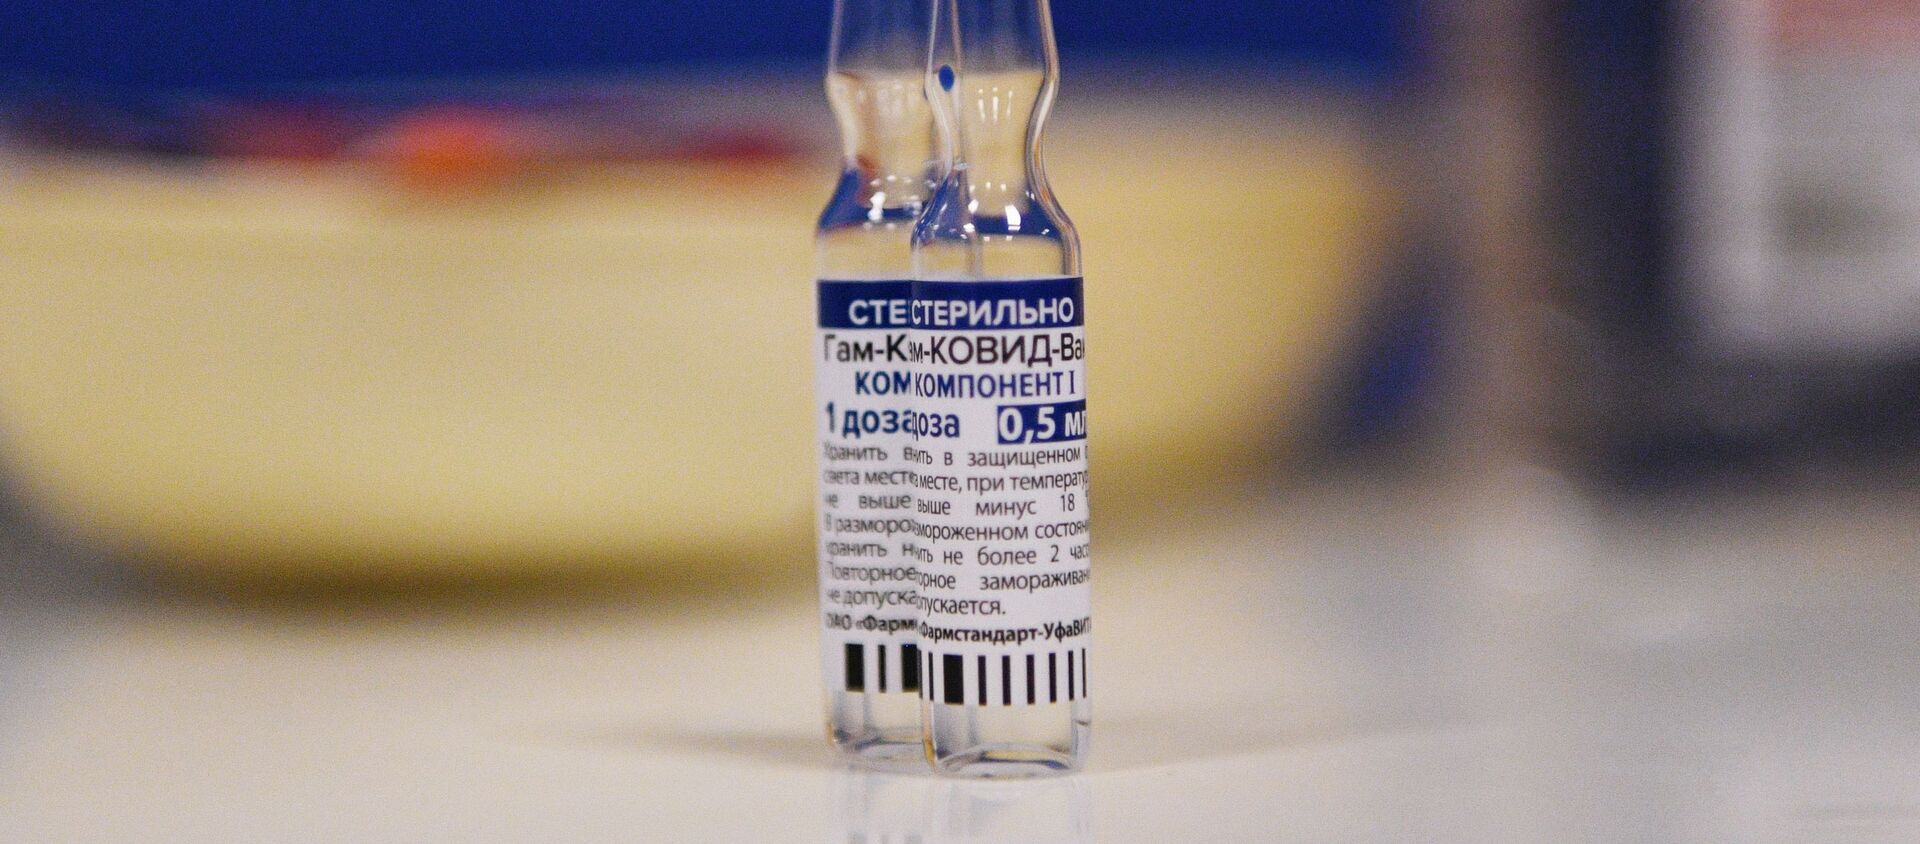 Вакцинация от COVID-19 в торговых центрах Москвы - Sputnik Абхазия, 1920, 06.02.2021